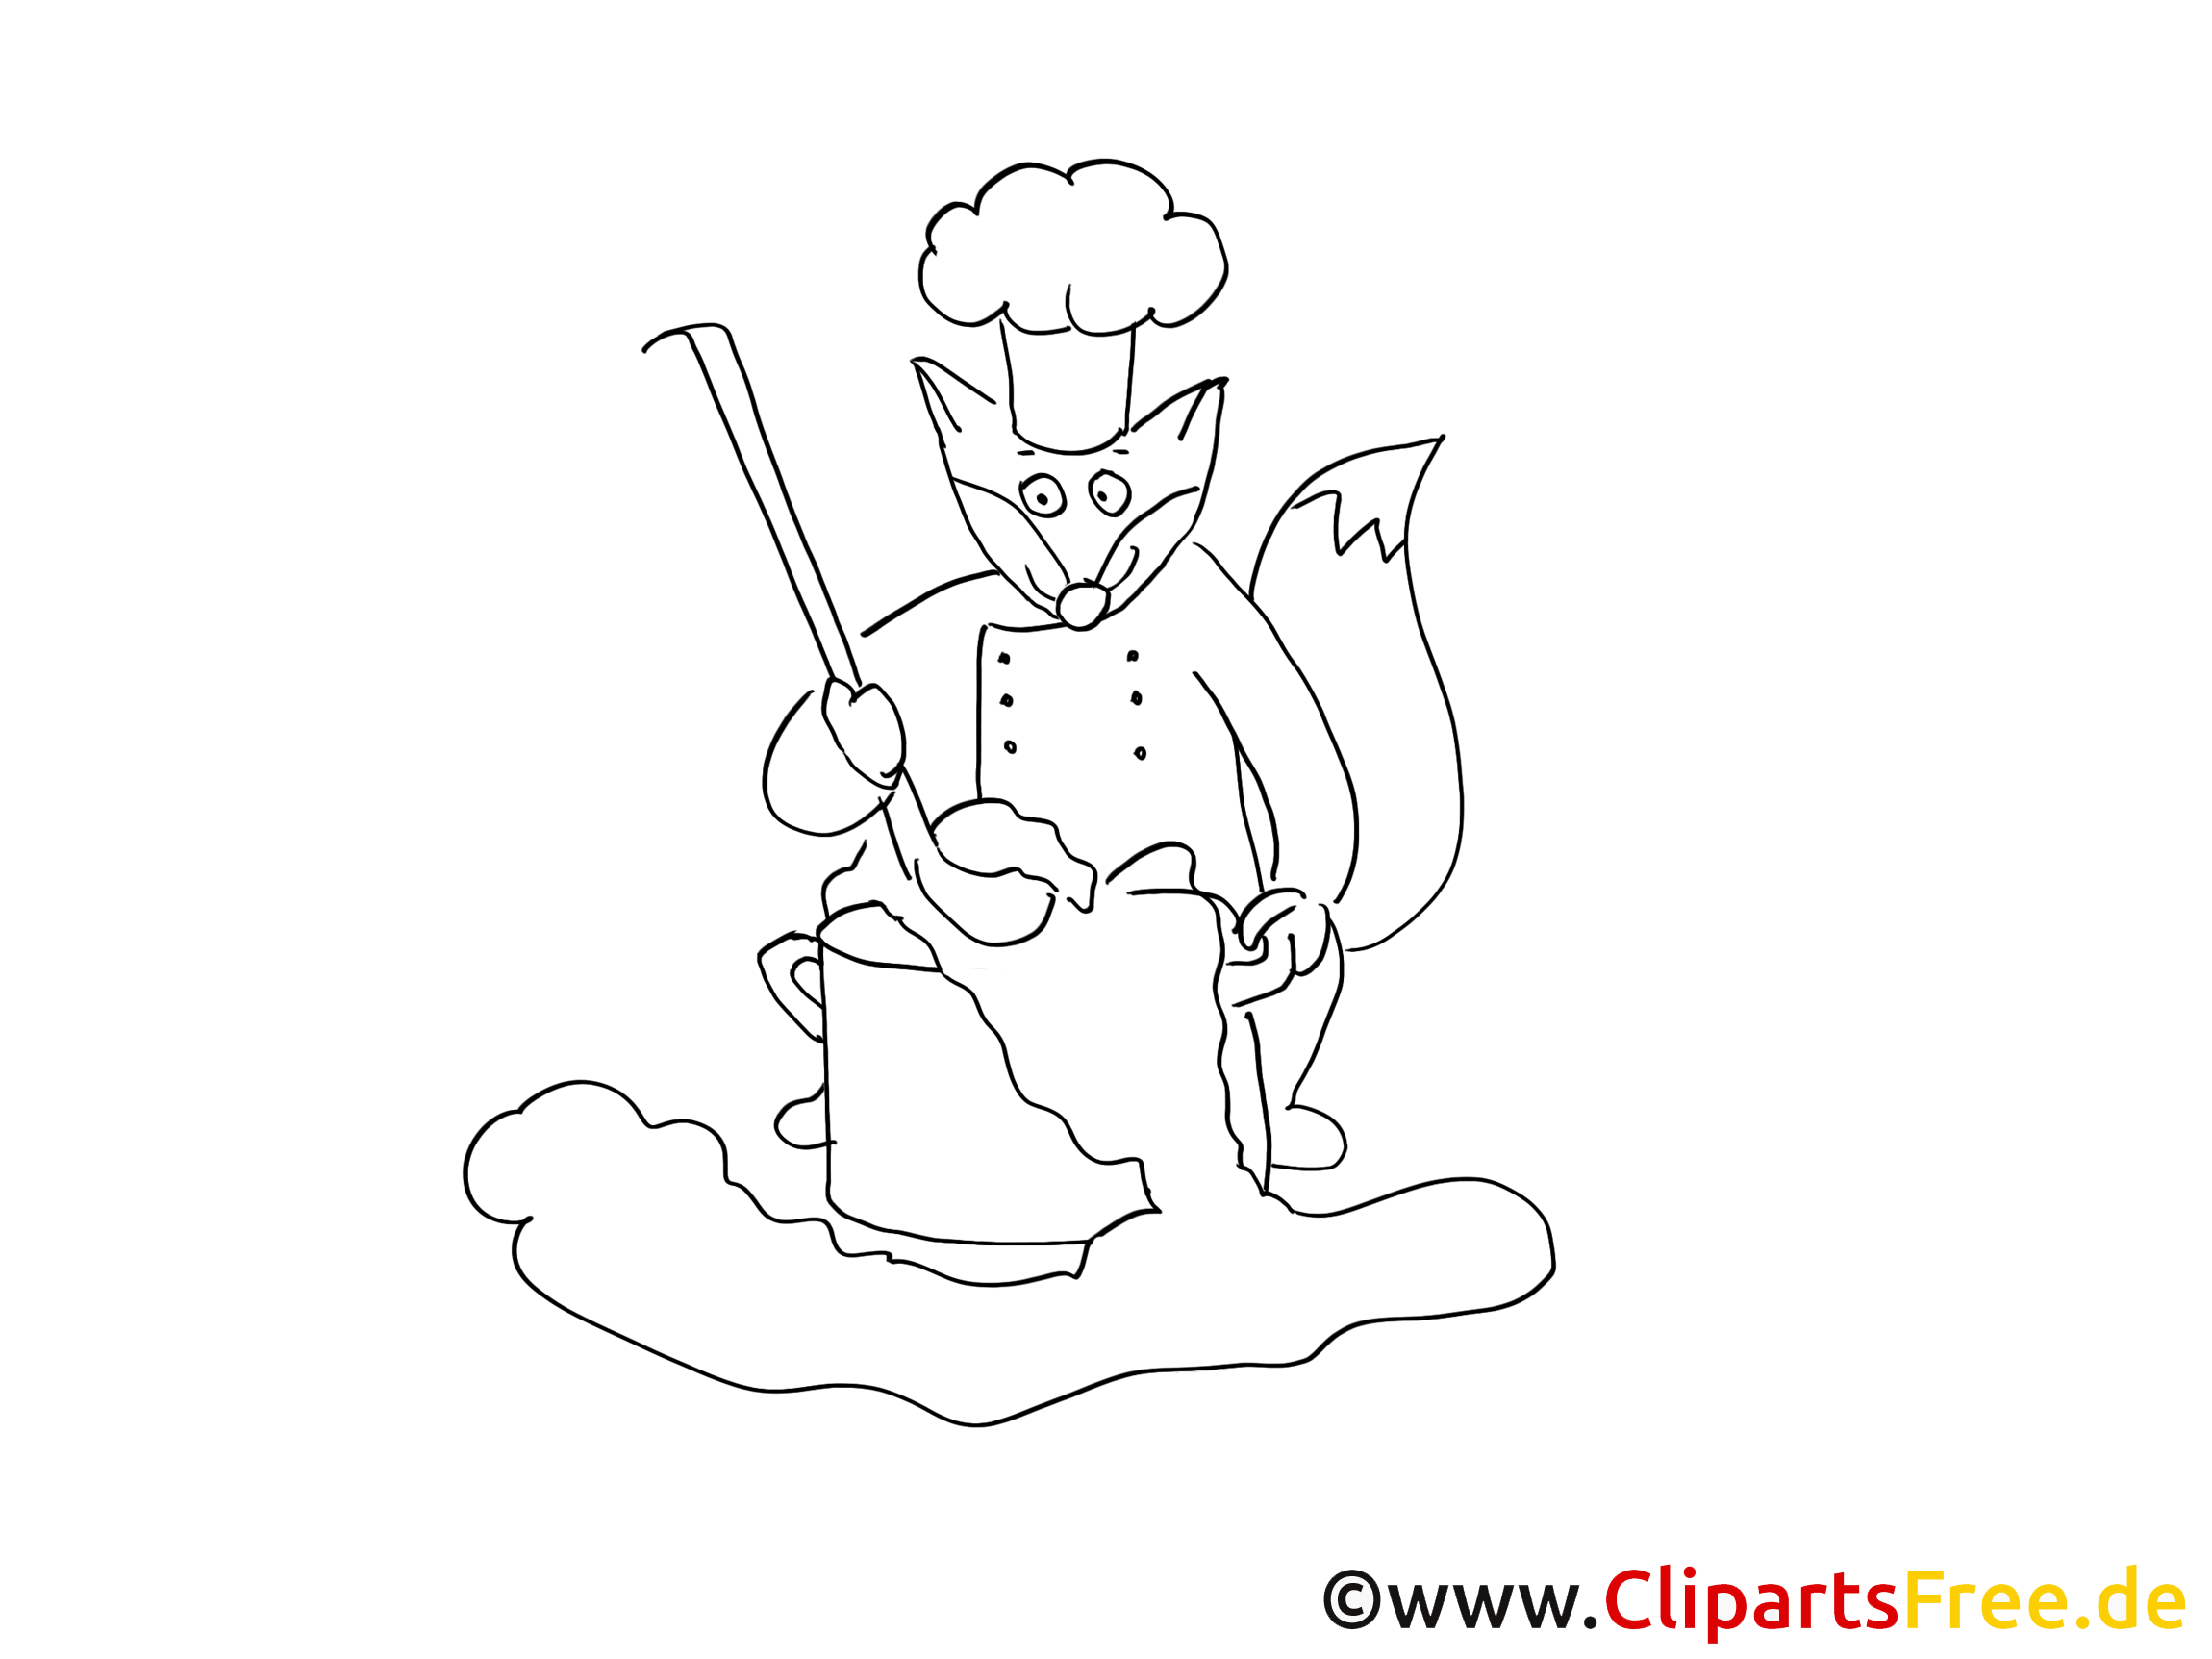 Cuisinier illustration – Cartoons à colorier